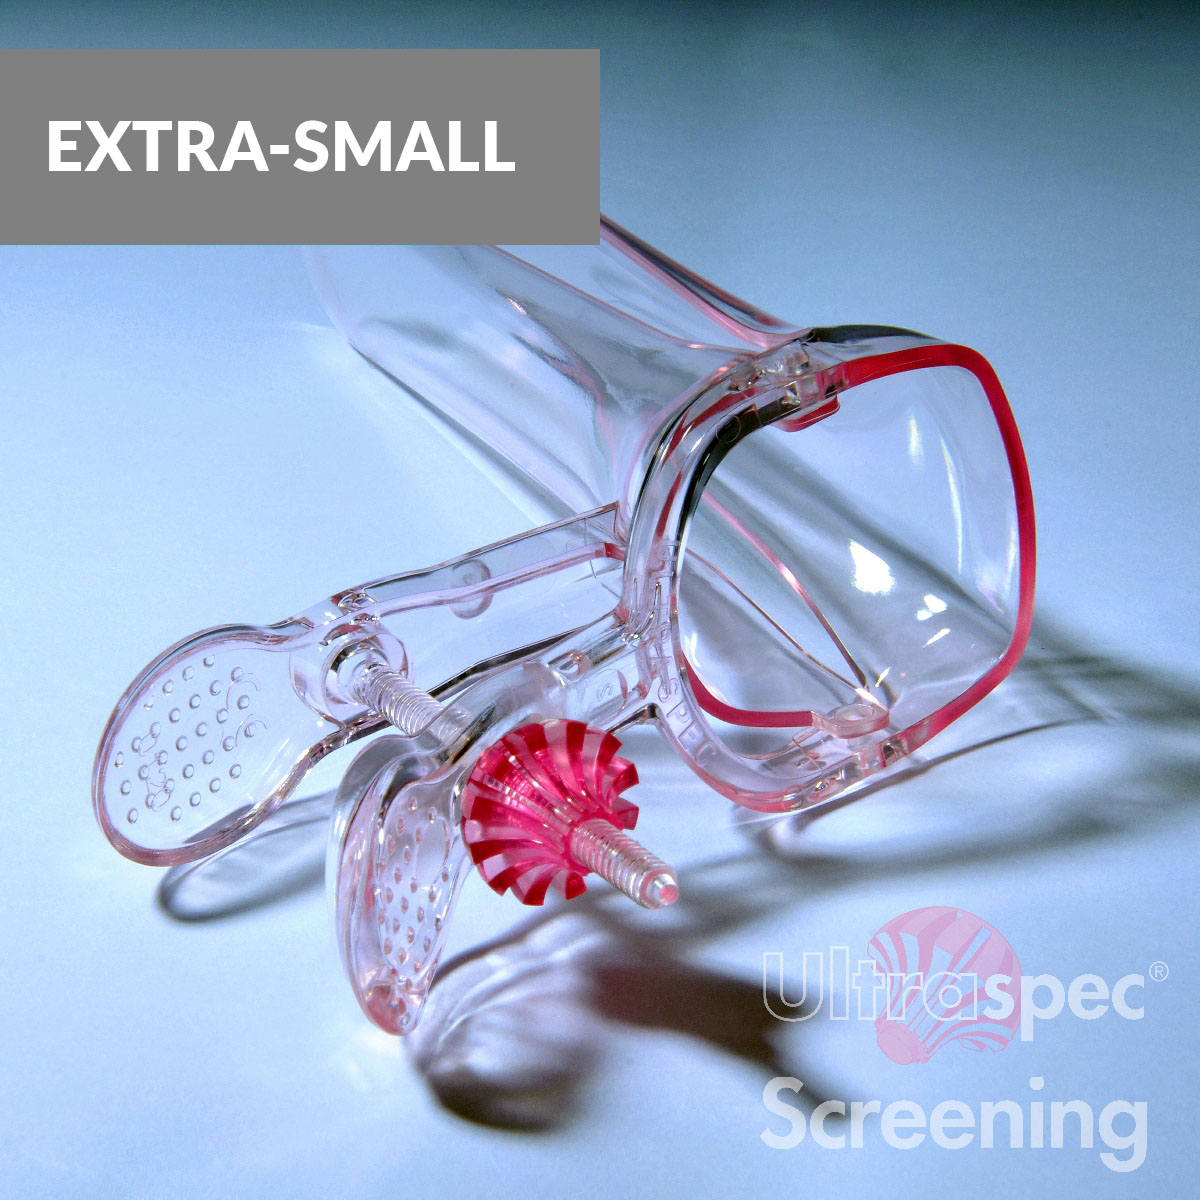 Ultraspec Screening Extra Small.jpg